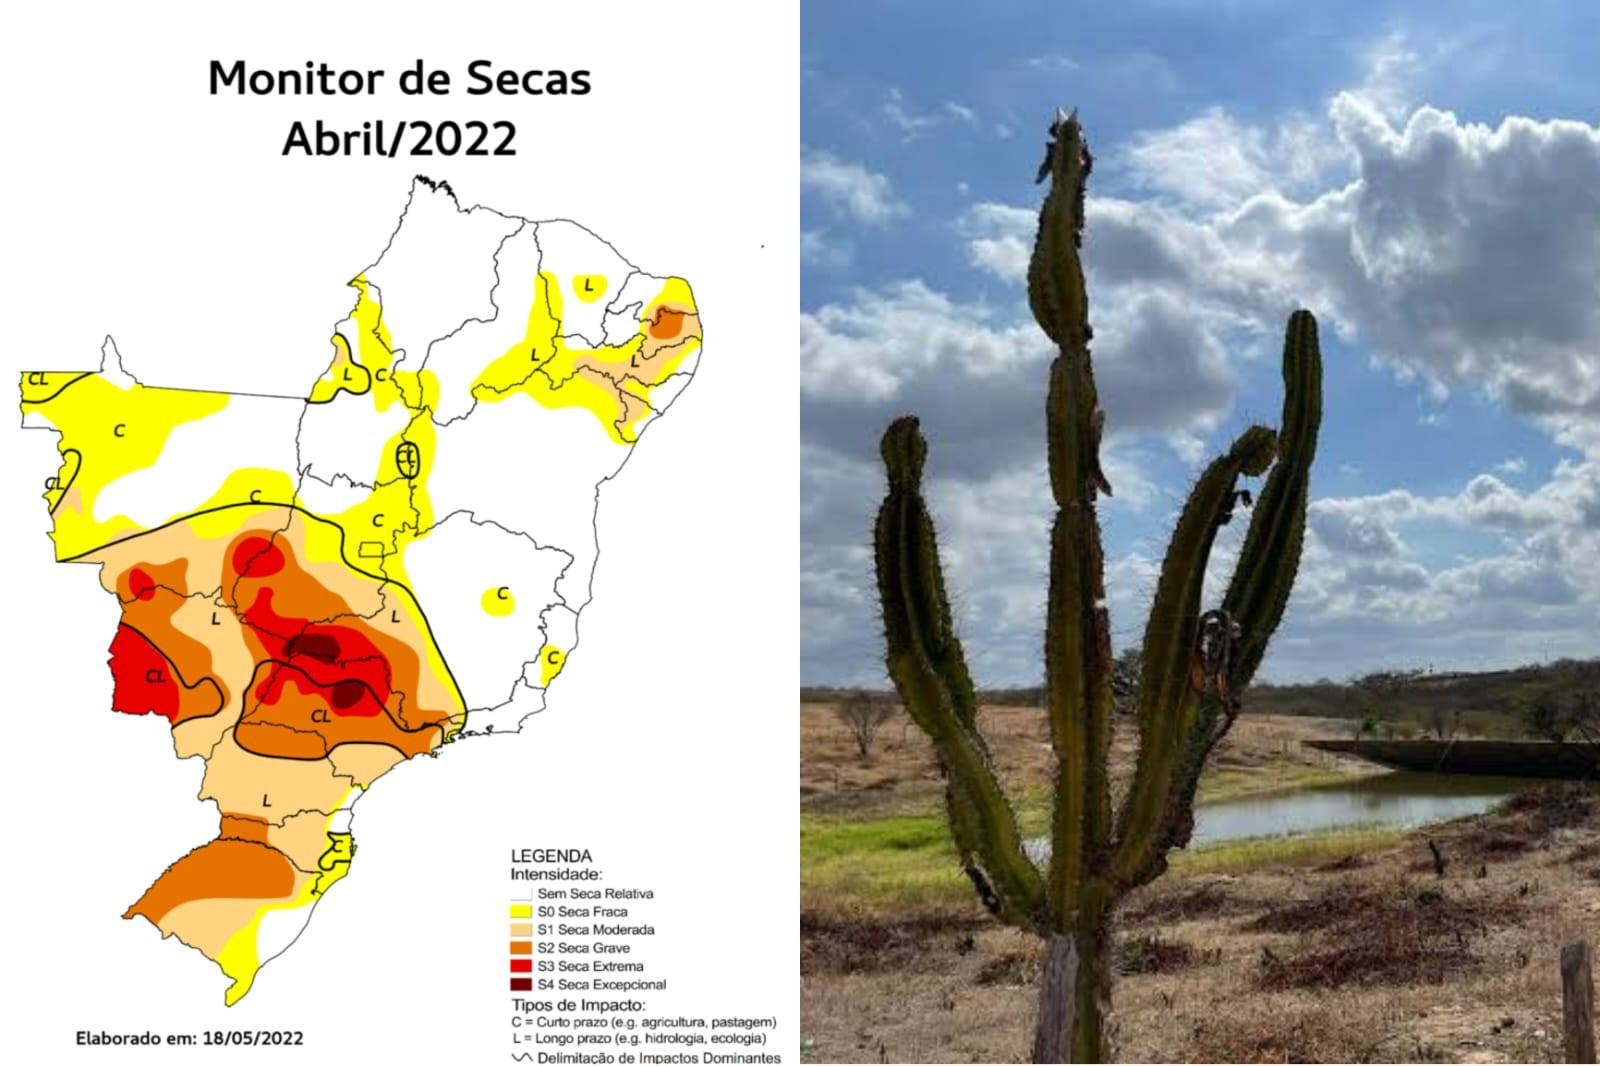 Ceará apresenta mais de 80% do território sem seca relativa, melhor resultado da série histórica